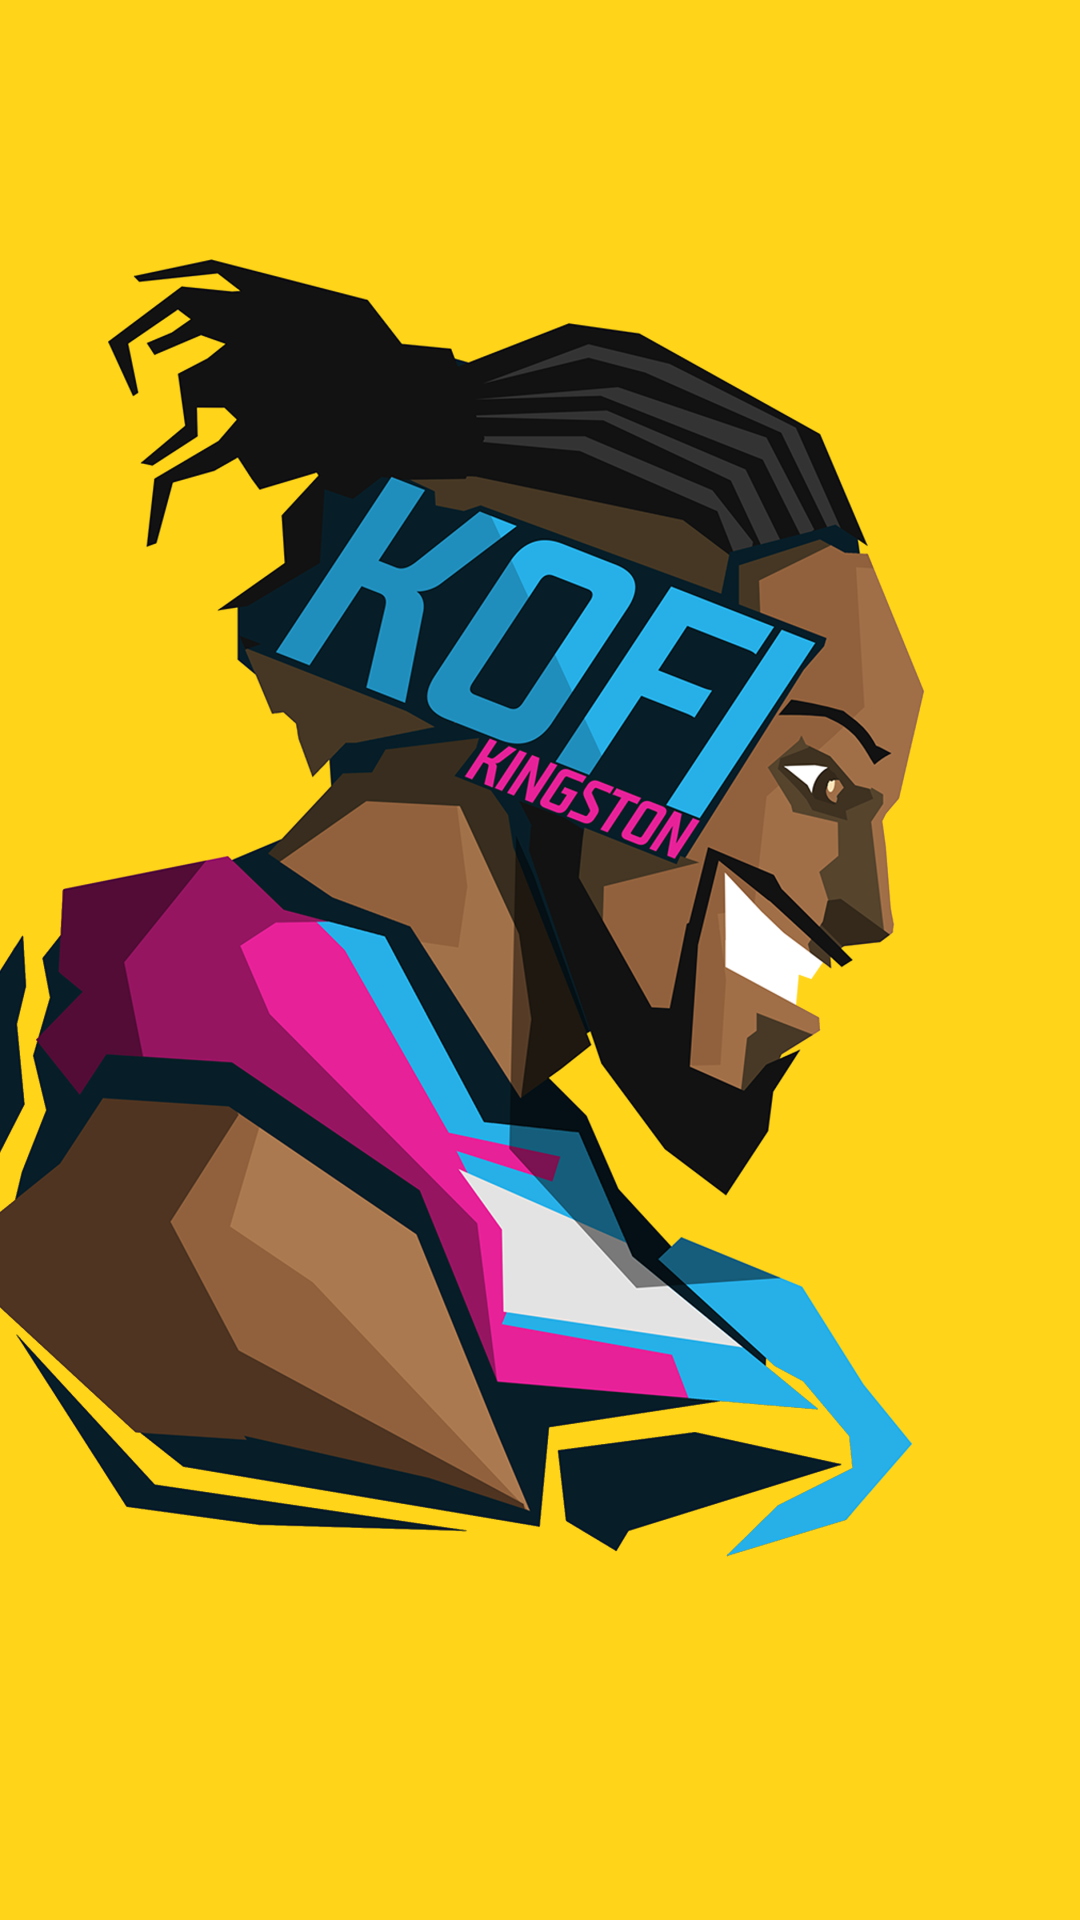 Kofi Kingston by BossLogic